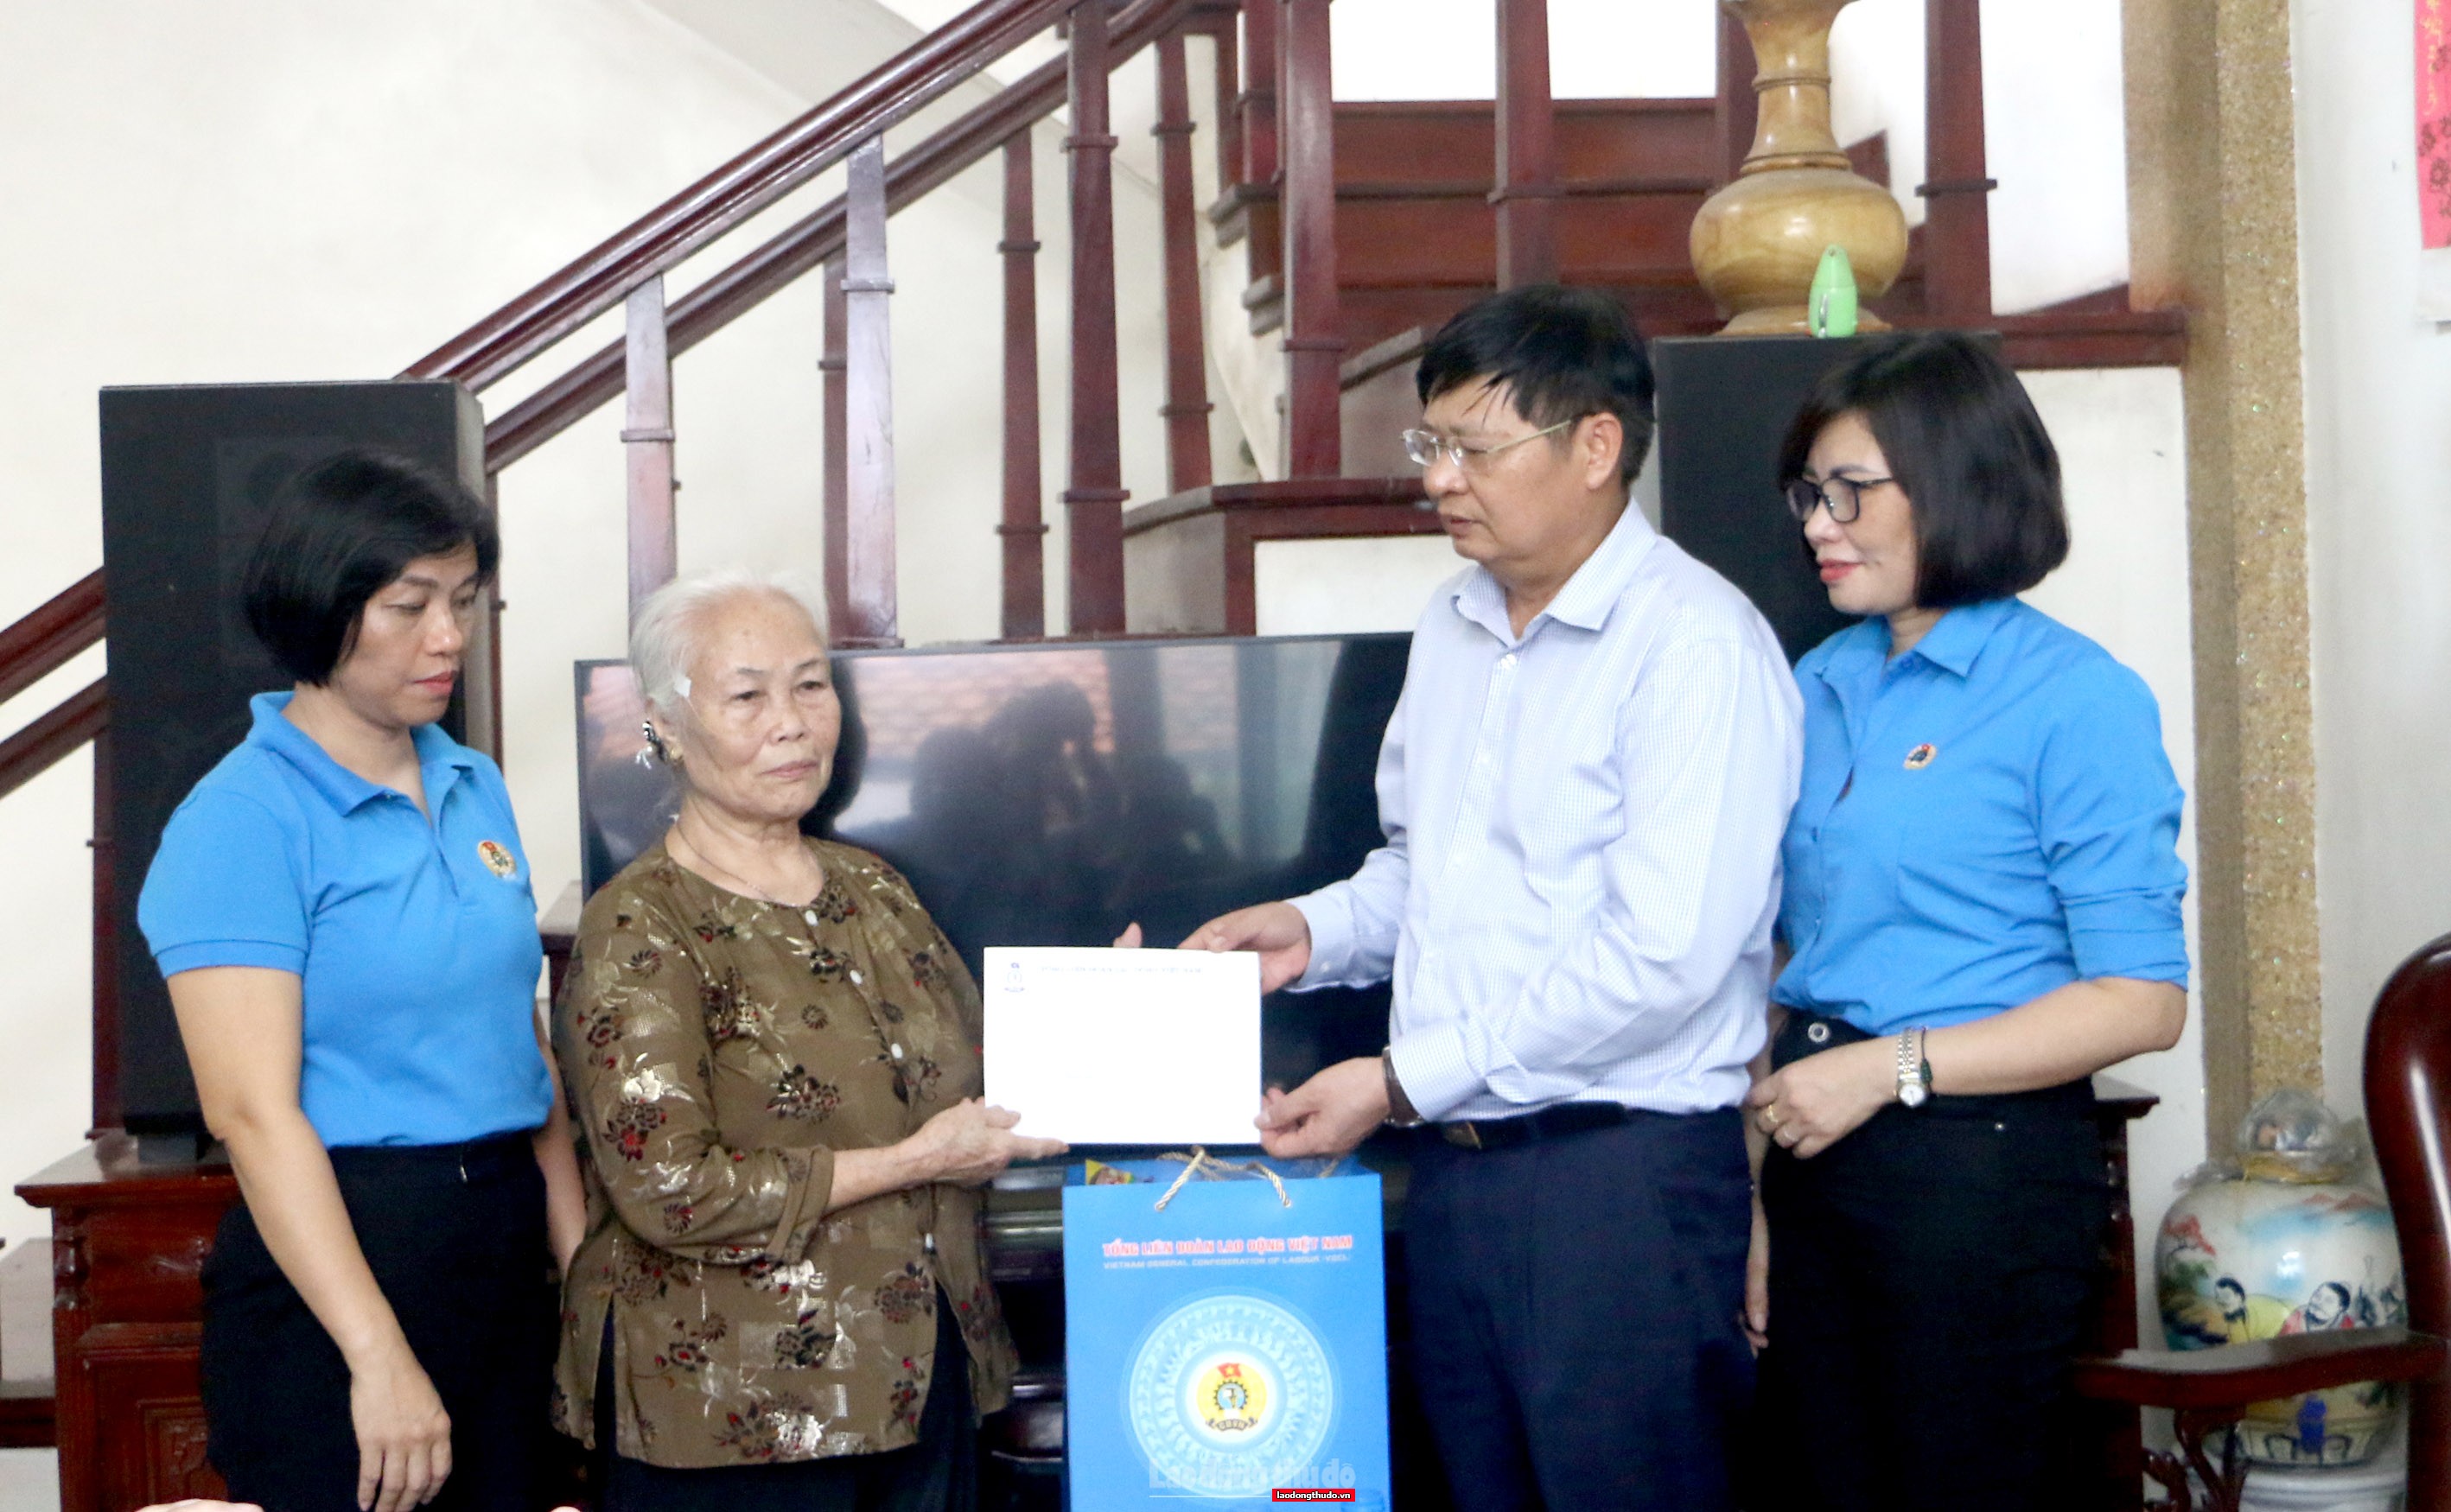 Lãnh đạo Tổng LĐLĐ Việt Nam và thành phố Hà Nội trao hỗ trợ cho công nhân bị tai nạn lao động